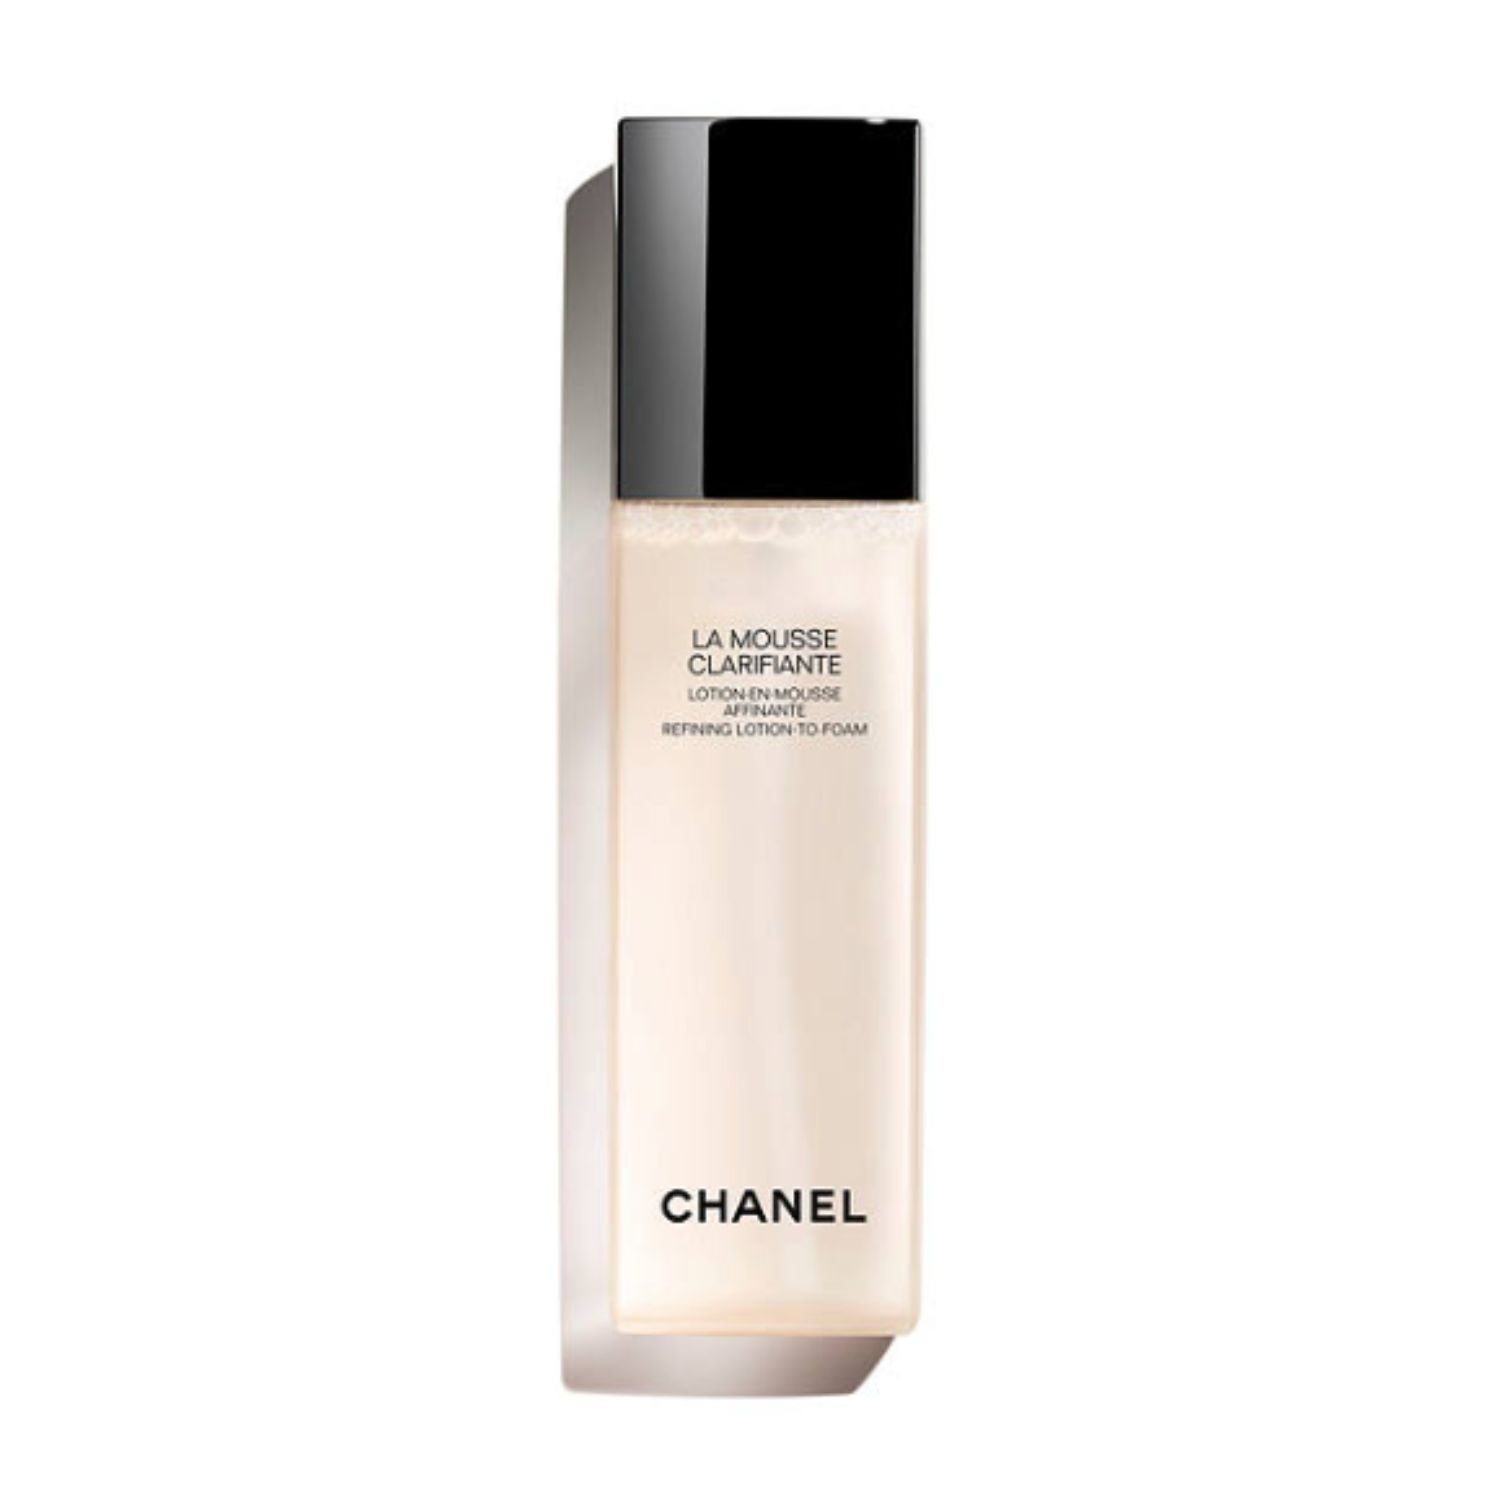 Chanel La Mousse Clarifante, £48